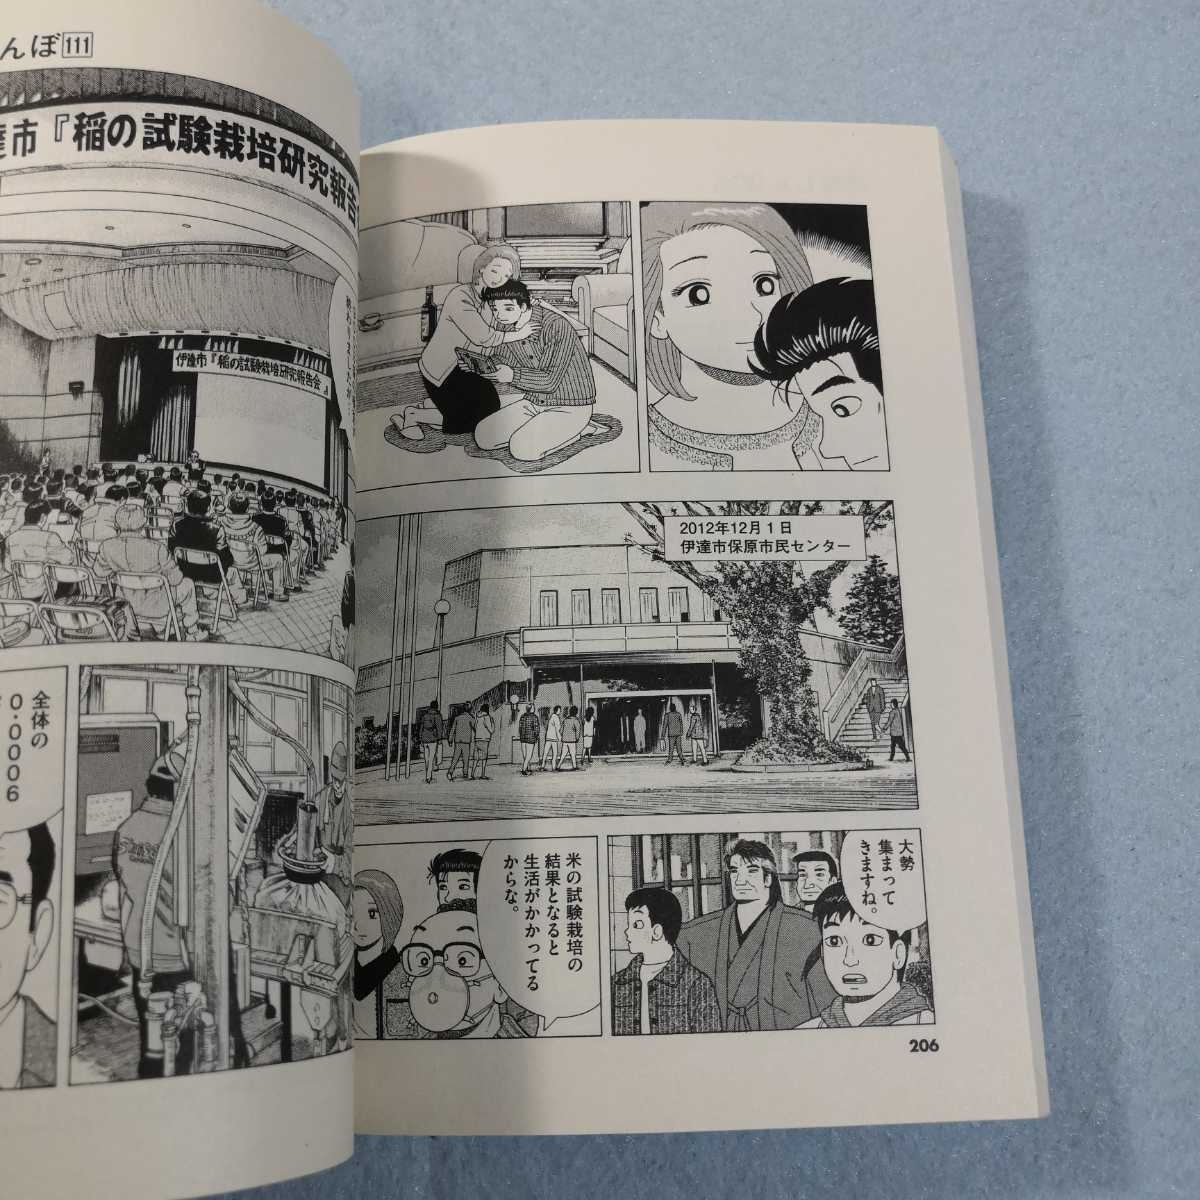 美味しんぼコミック全111巻 - 漫画、コミック